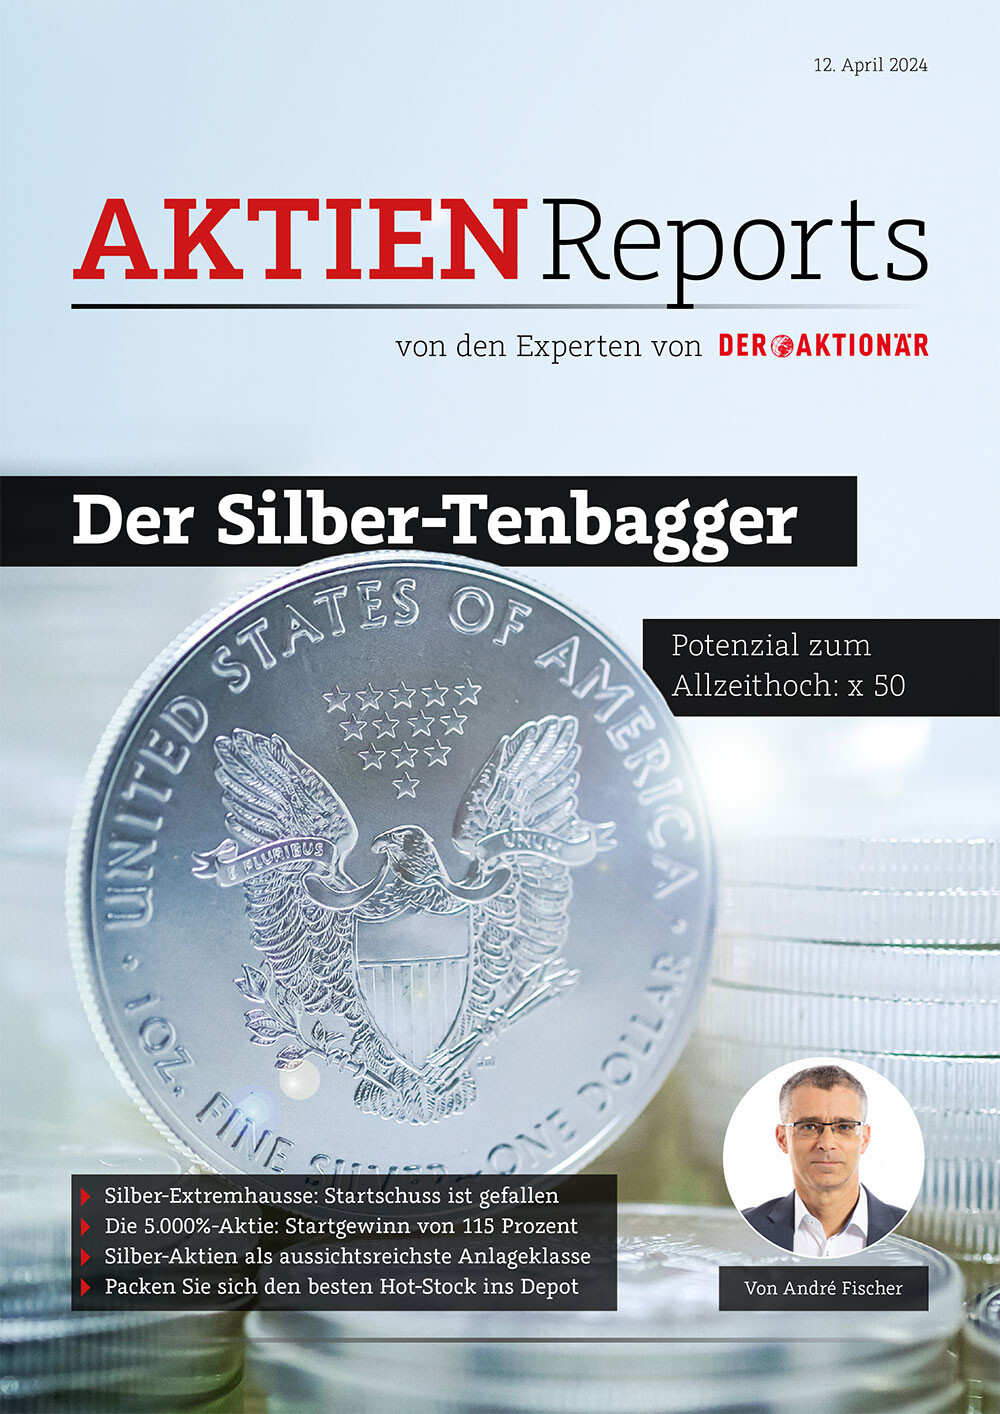 Aktienreport, Tenbagger, Silber, André Fischer